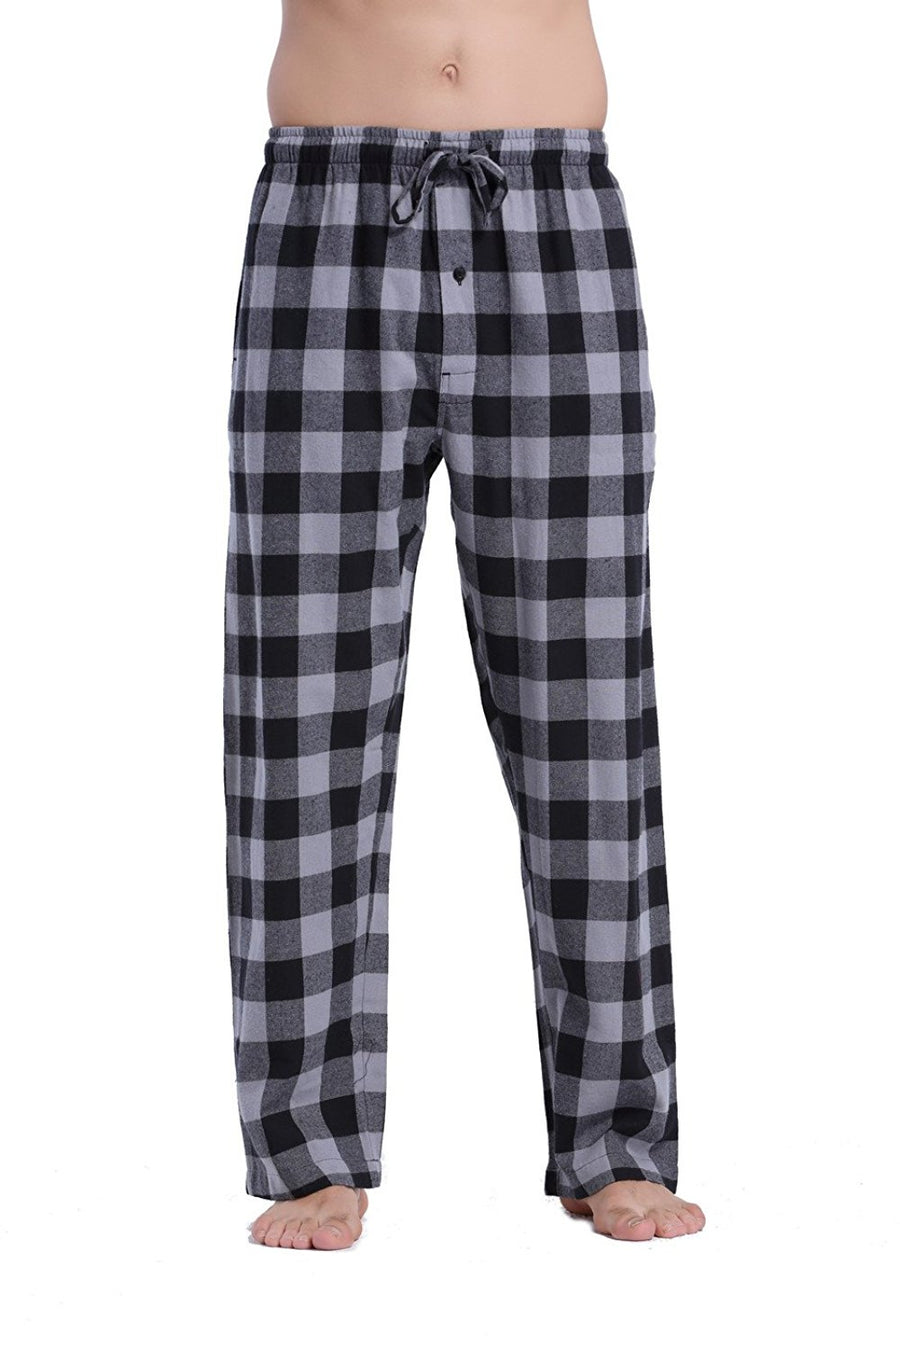 CYZ Women's 100% Cotton Super Soft Flannel Plaid Pajama/Louge Pants – CYZ  Collection